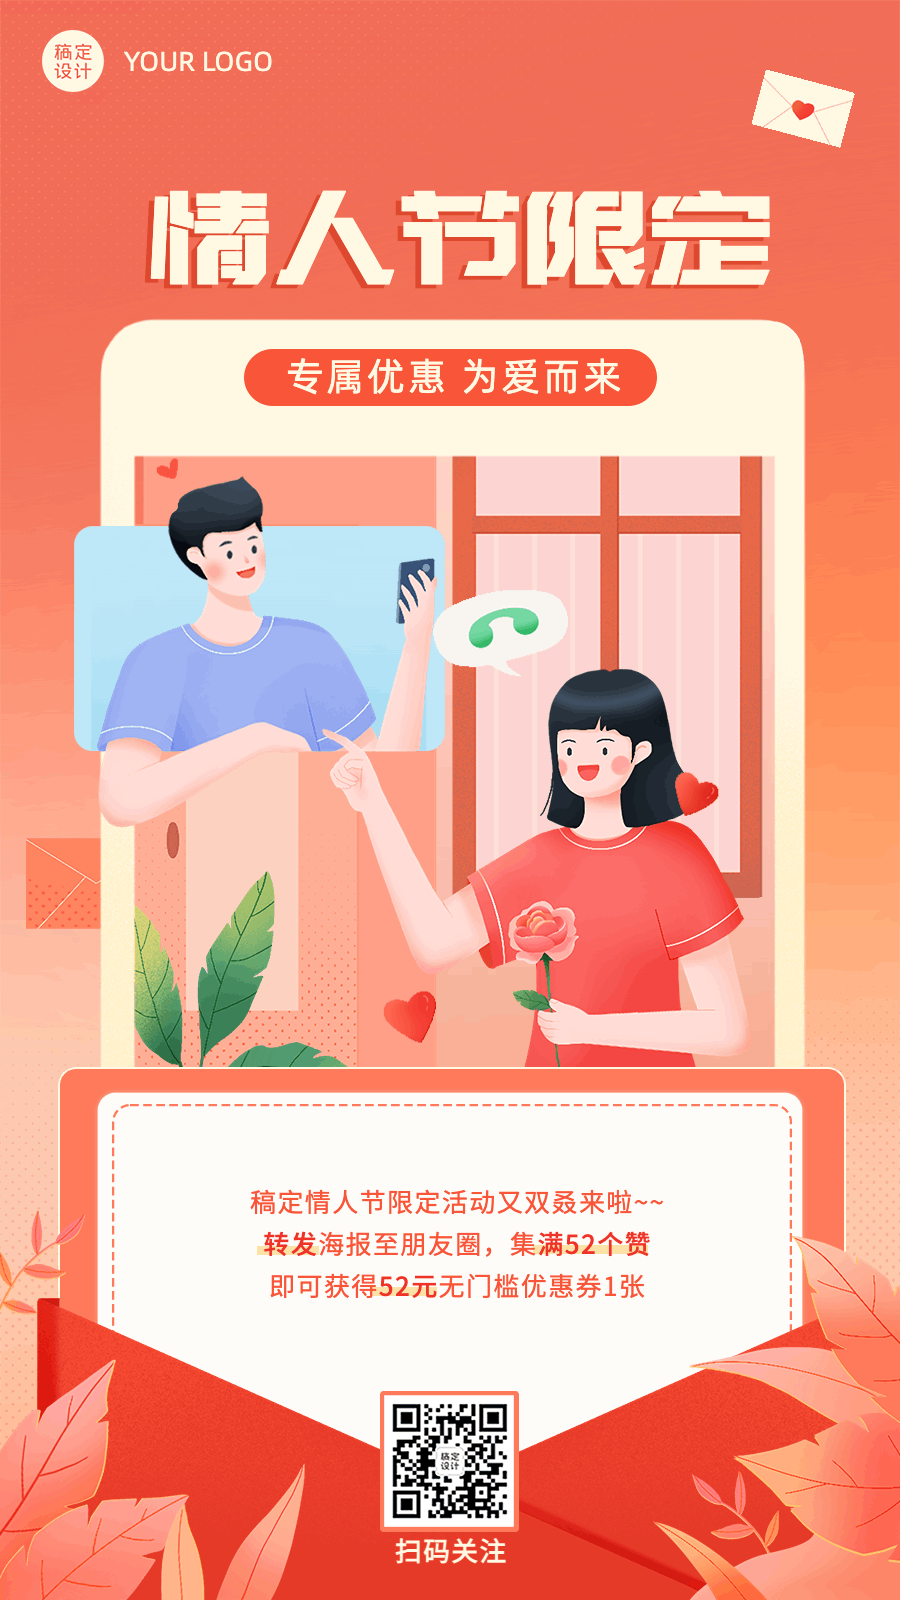 七夕情人节限定告白活动插画动态海报预览效果